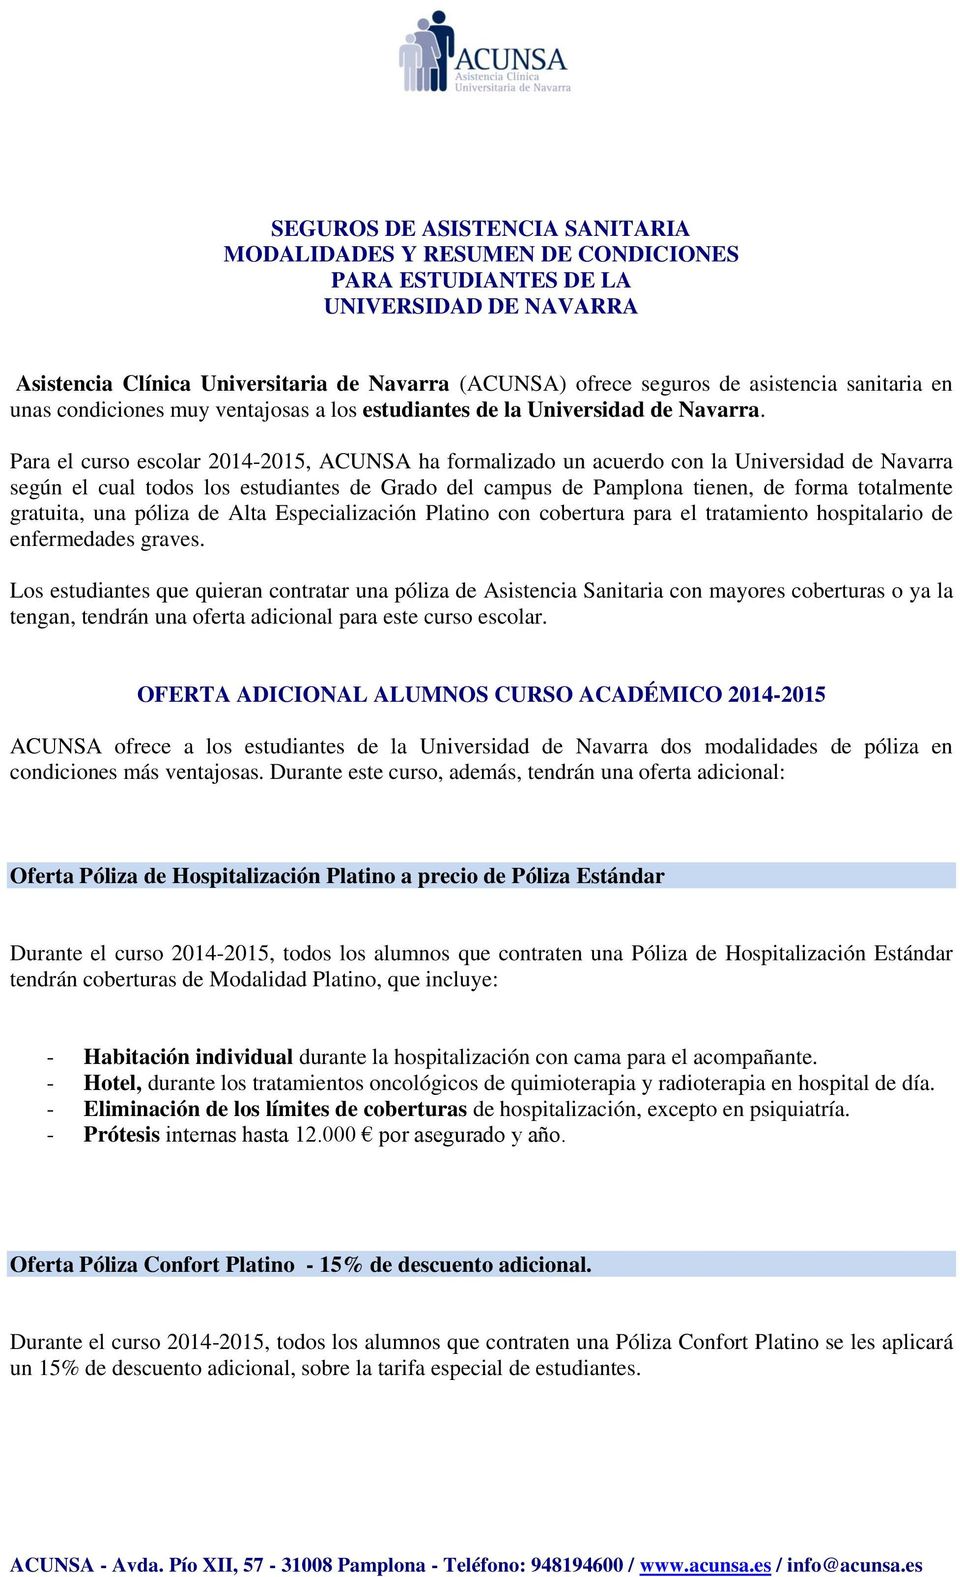 Para el curso escolar 2014-2015, ACUNSA ha formalizado un acuerdo con la Universidad de Navarra según el cual todos los estudiantes de Grado del campus de Pamplona tienen, de forma totalmente